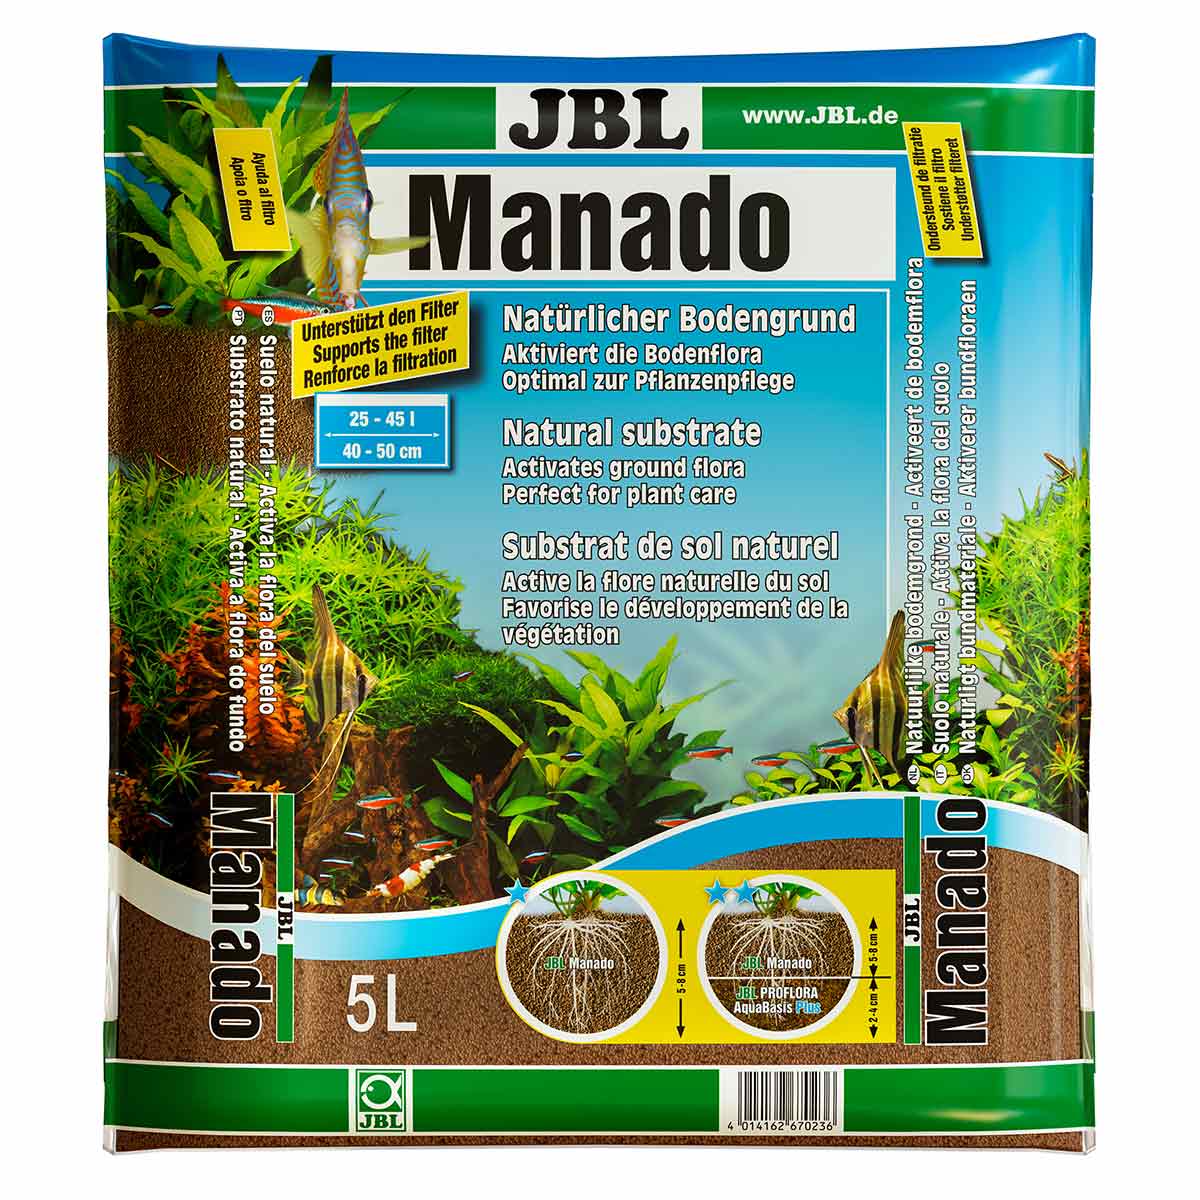 JBL Manado natürlicher Bodengrund 5l